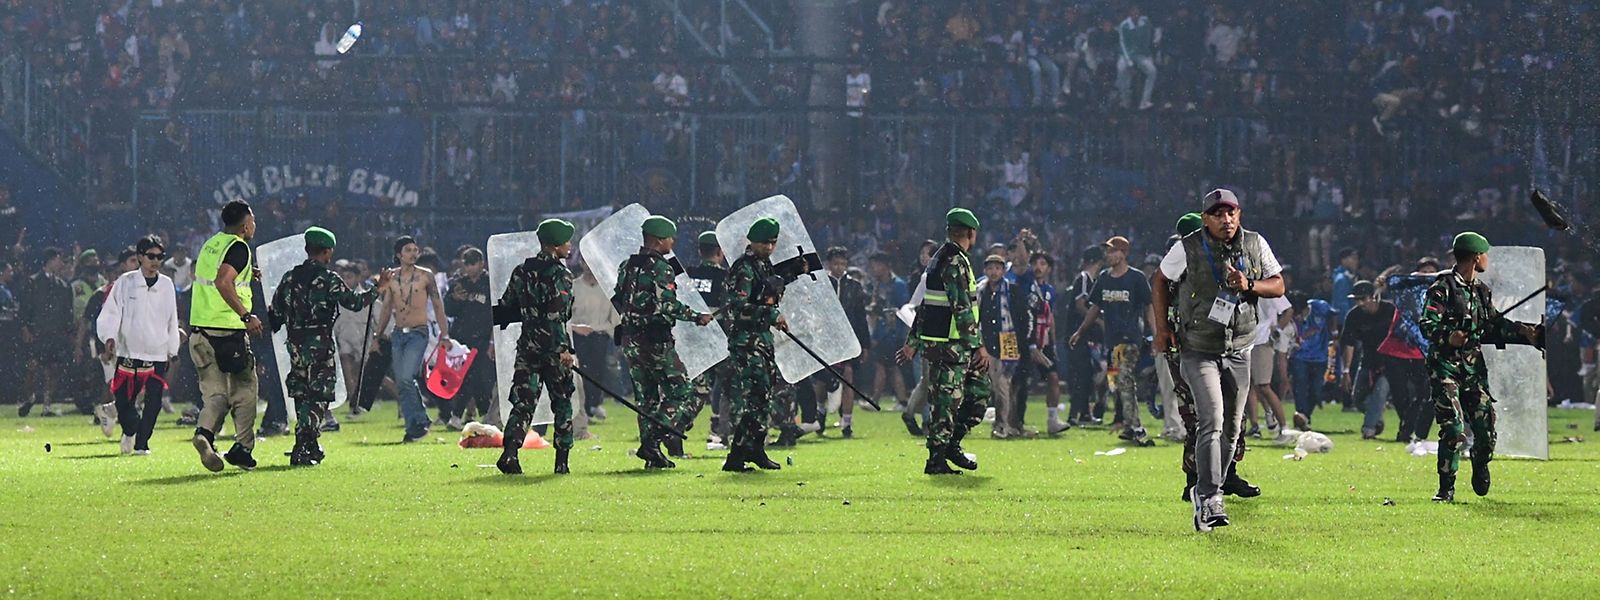 Die Tragödie hatte sich in der indonesischen Provinz Ost-Java bei der Partie zwischen Arema FC und Persebaya FC ereignet.